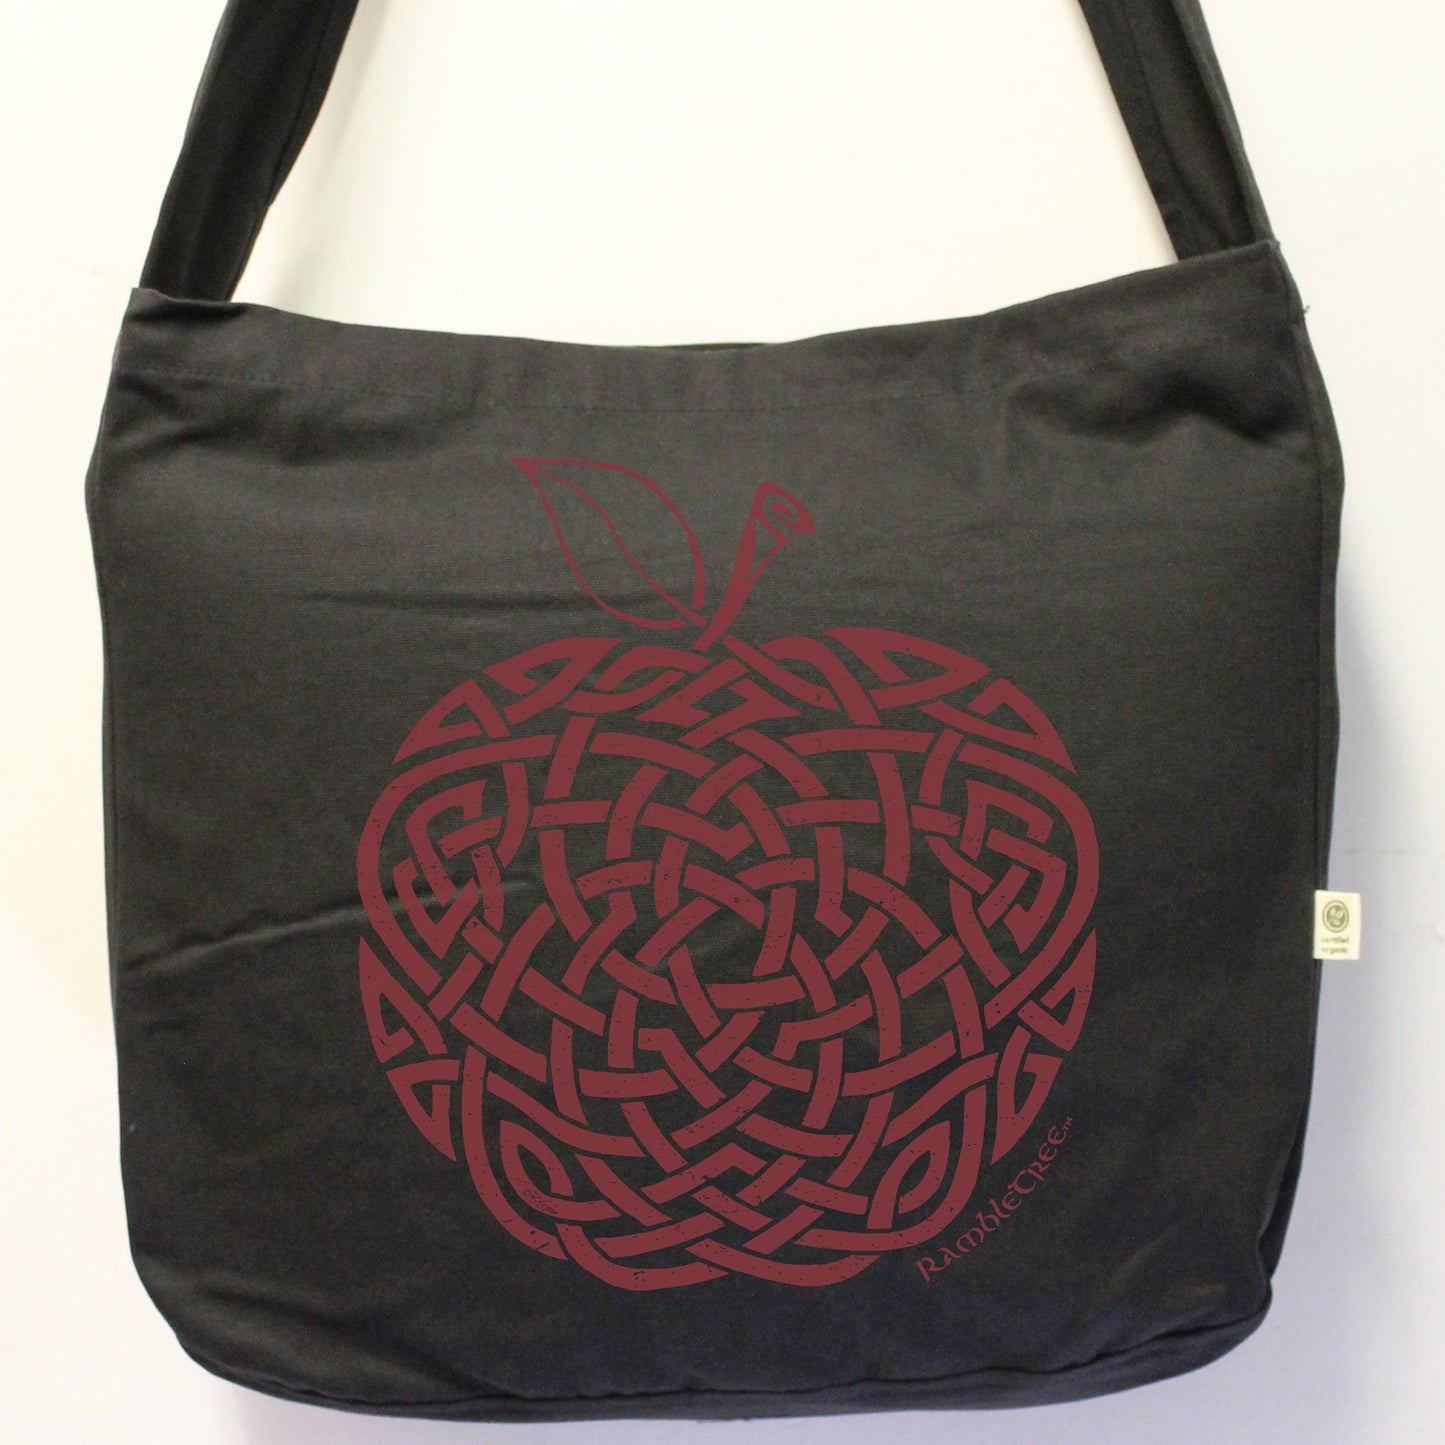 Morgan's Apple - Organic tote/shoulder bag